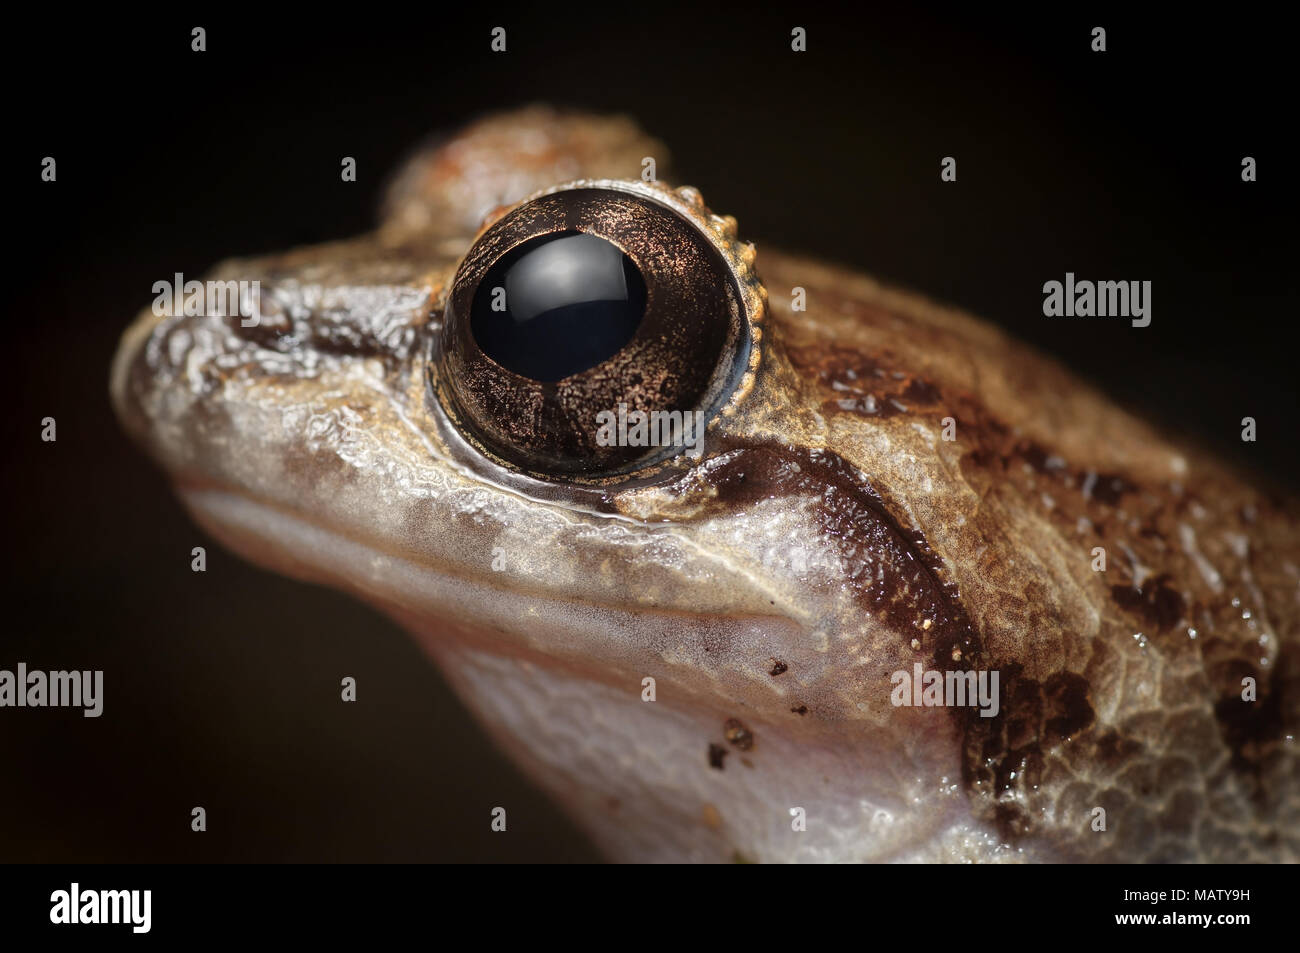 Limnonectes laticeps grenouille ruisseau Banque D'Images